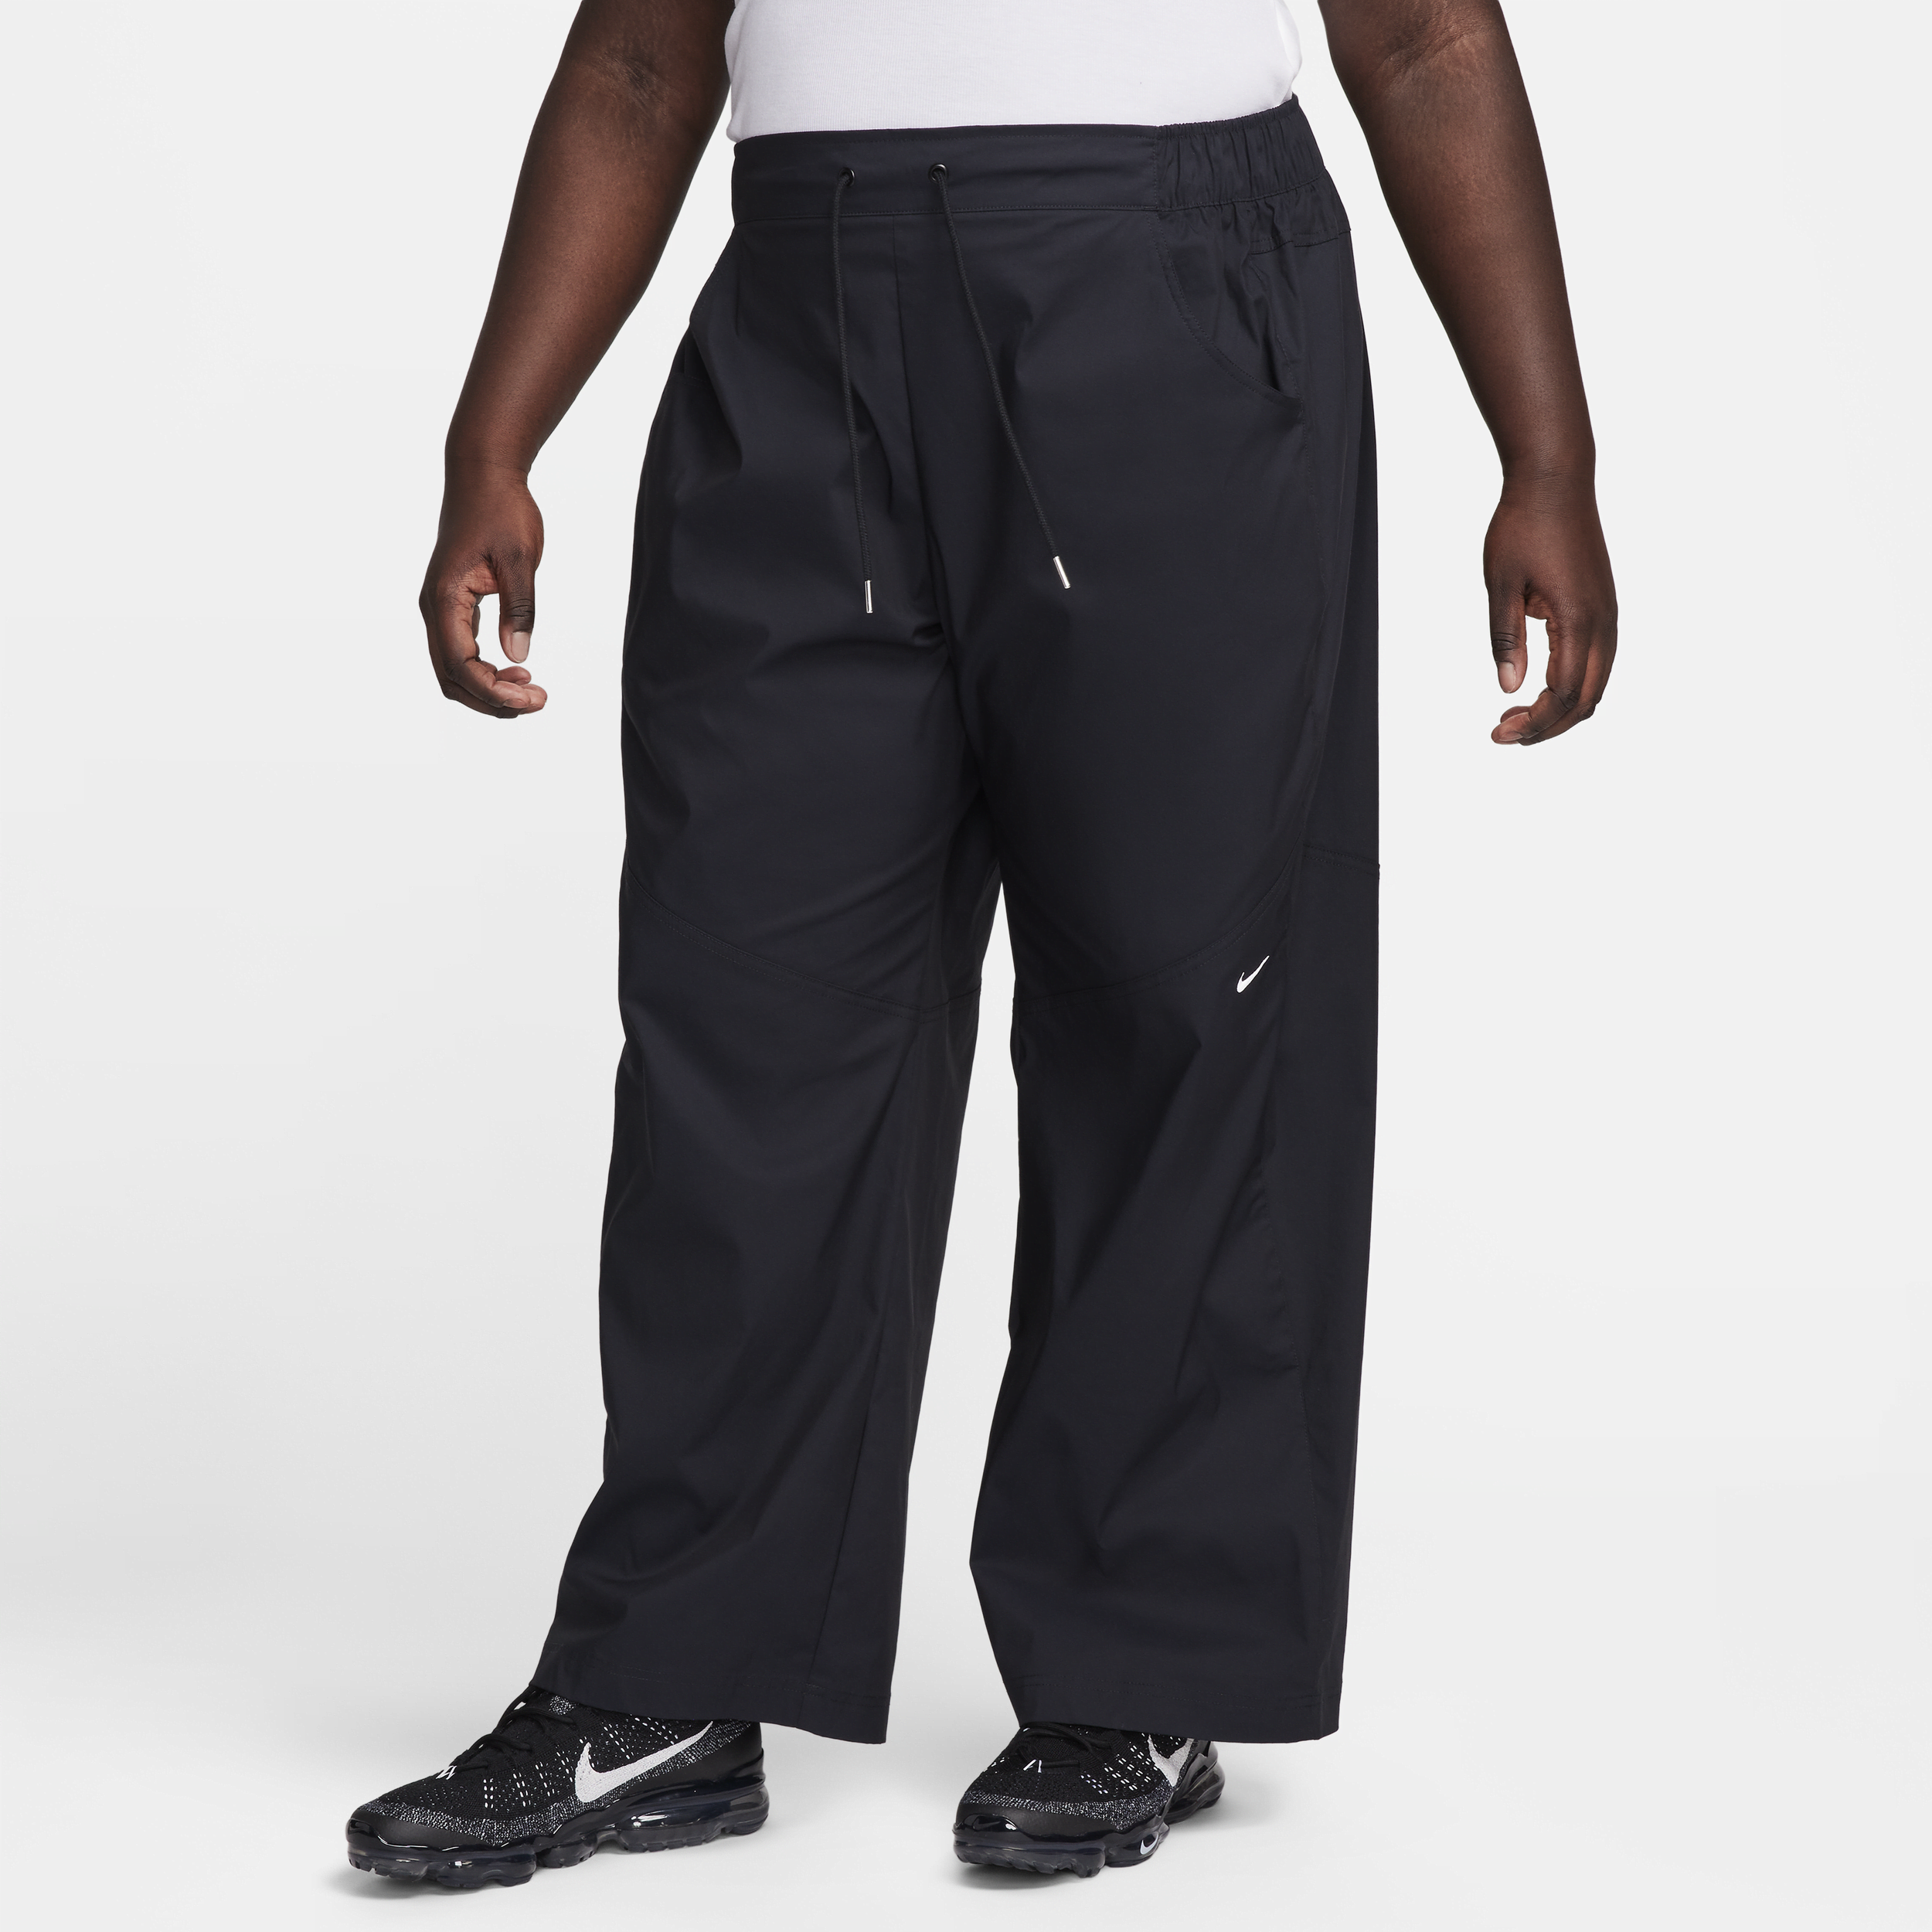 Vævede Nike Sportswear Essential-bukser med høj talje til kvinder (plus size) - sort